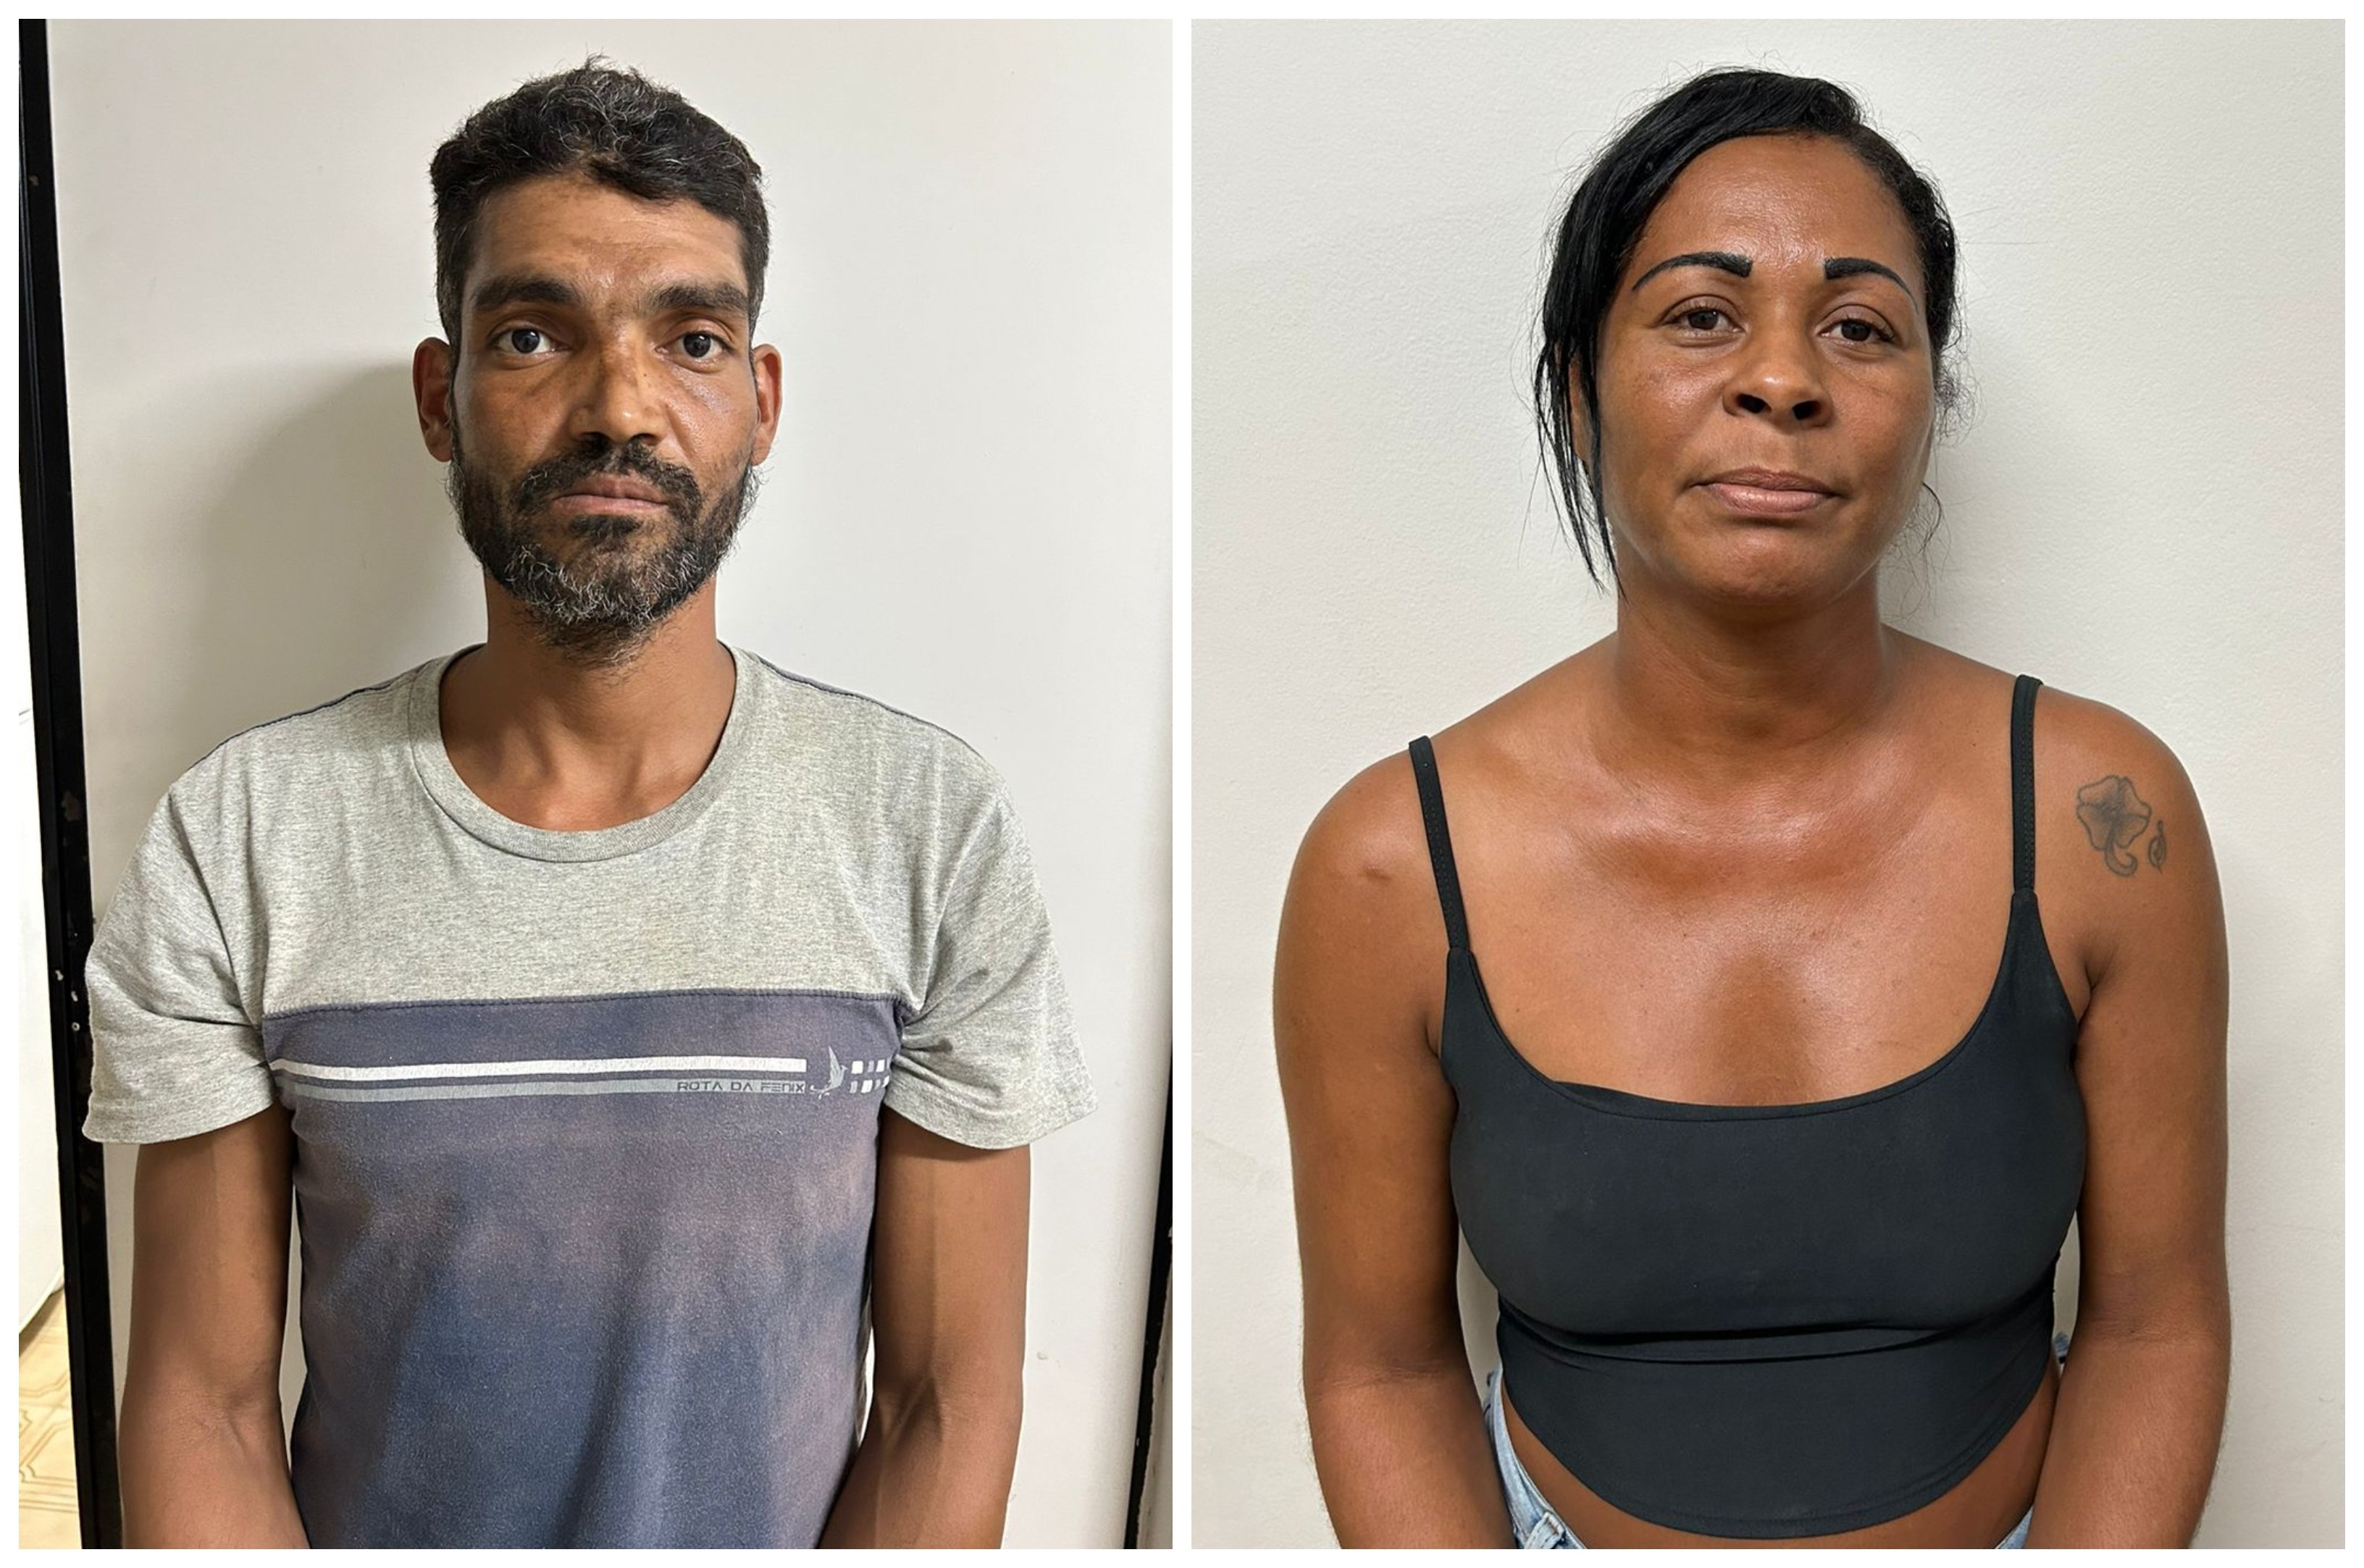 Foram presos: Lucas Xavier dos Santos, de 37 anos, e Simone Ferreira Camilo, de 39 anos. De acordo com as investigações, o casal estava bebendo com Adilson de Jesus Bispo antes do crime